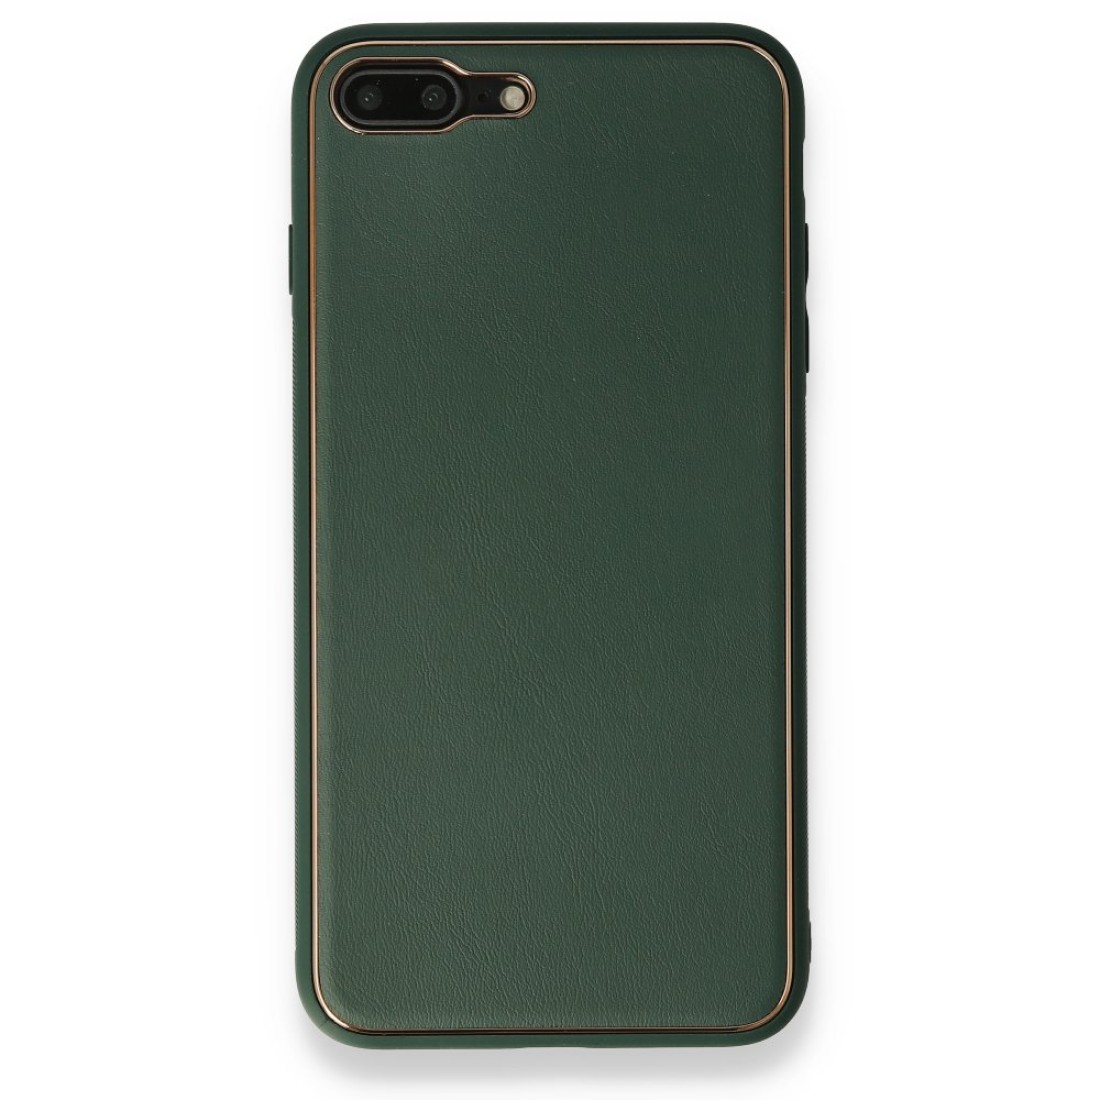 Apple iPhone 8 Plus Kılıf Coco Deri Silikon Kapak - Yeşil